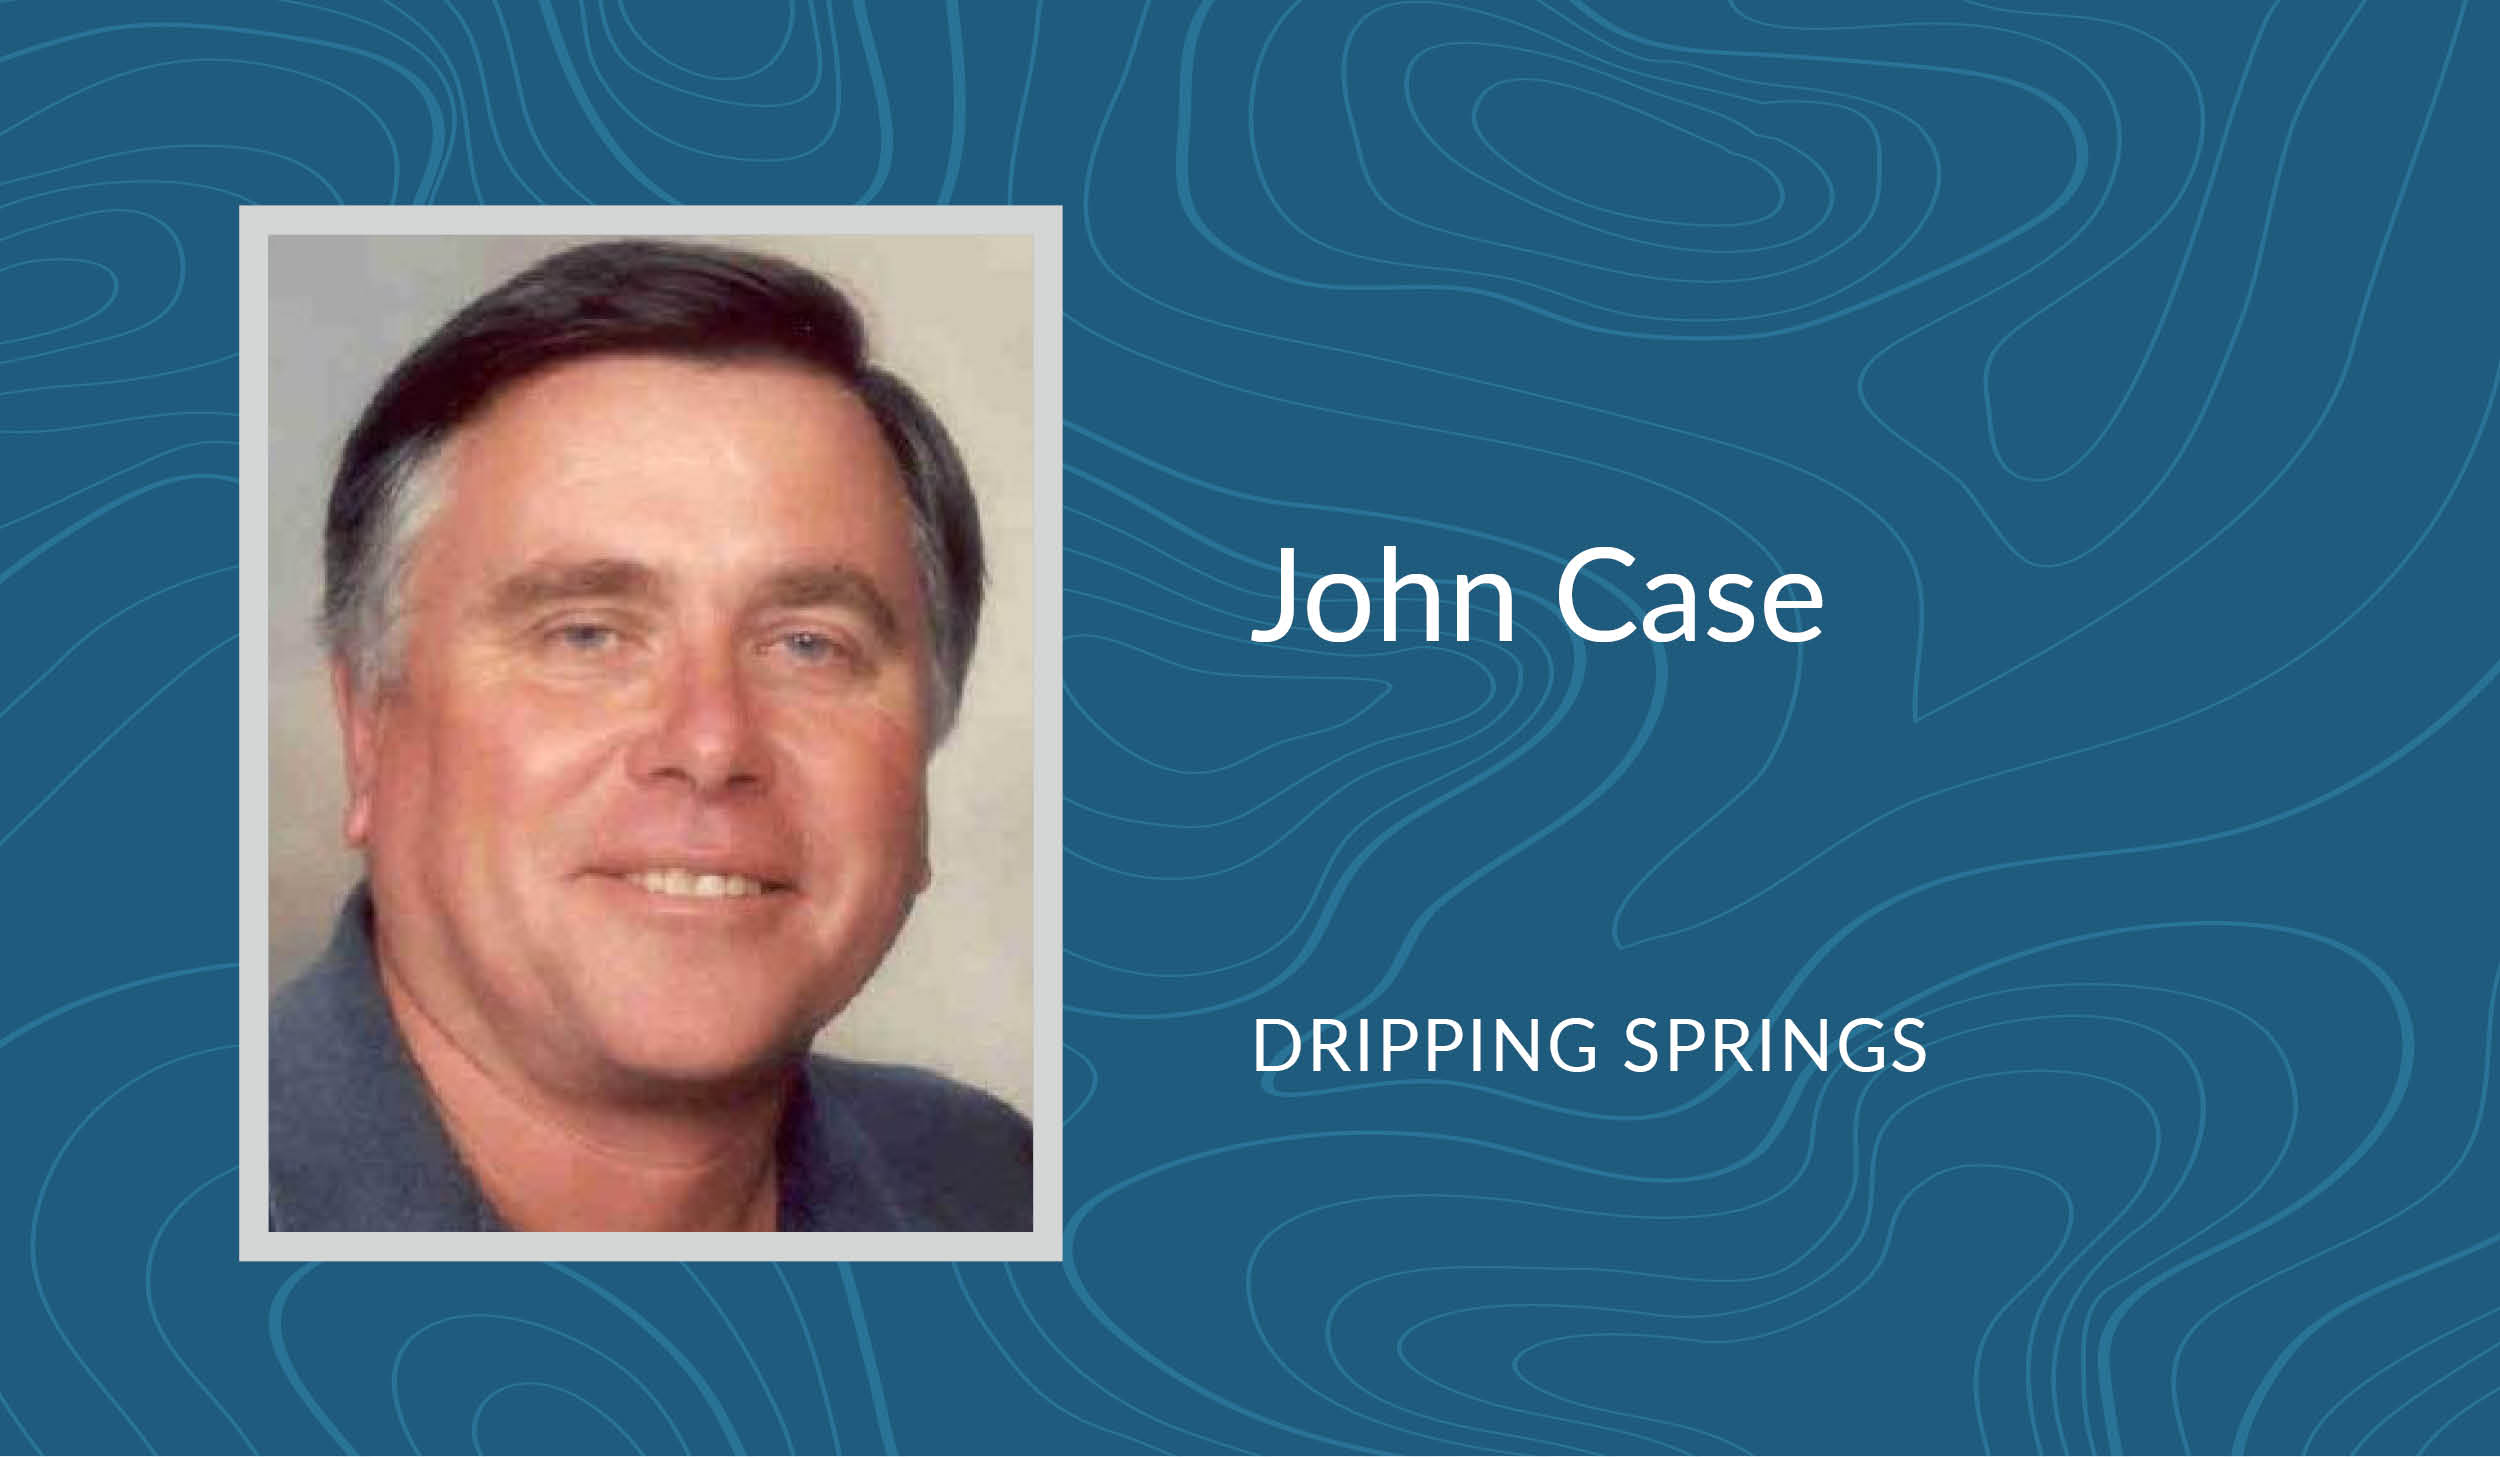 John Case Landing Page Headers.jpg